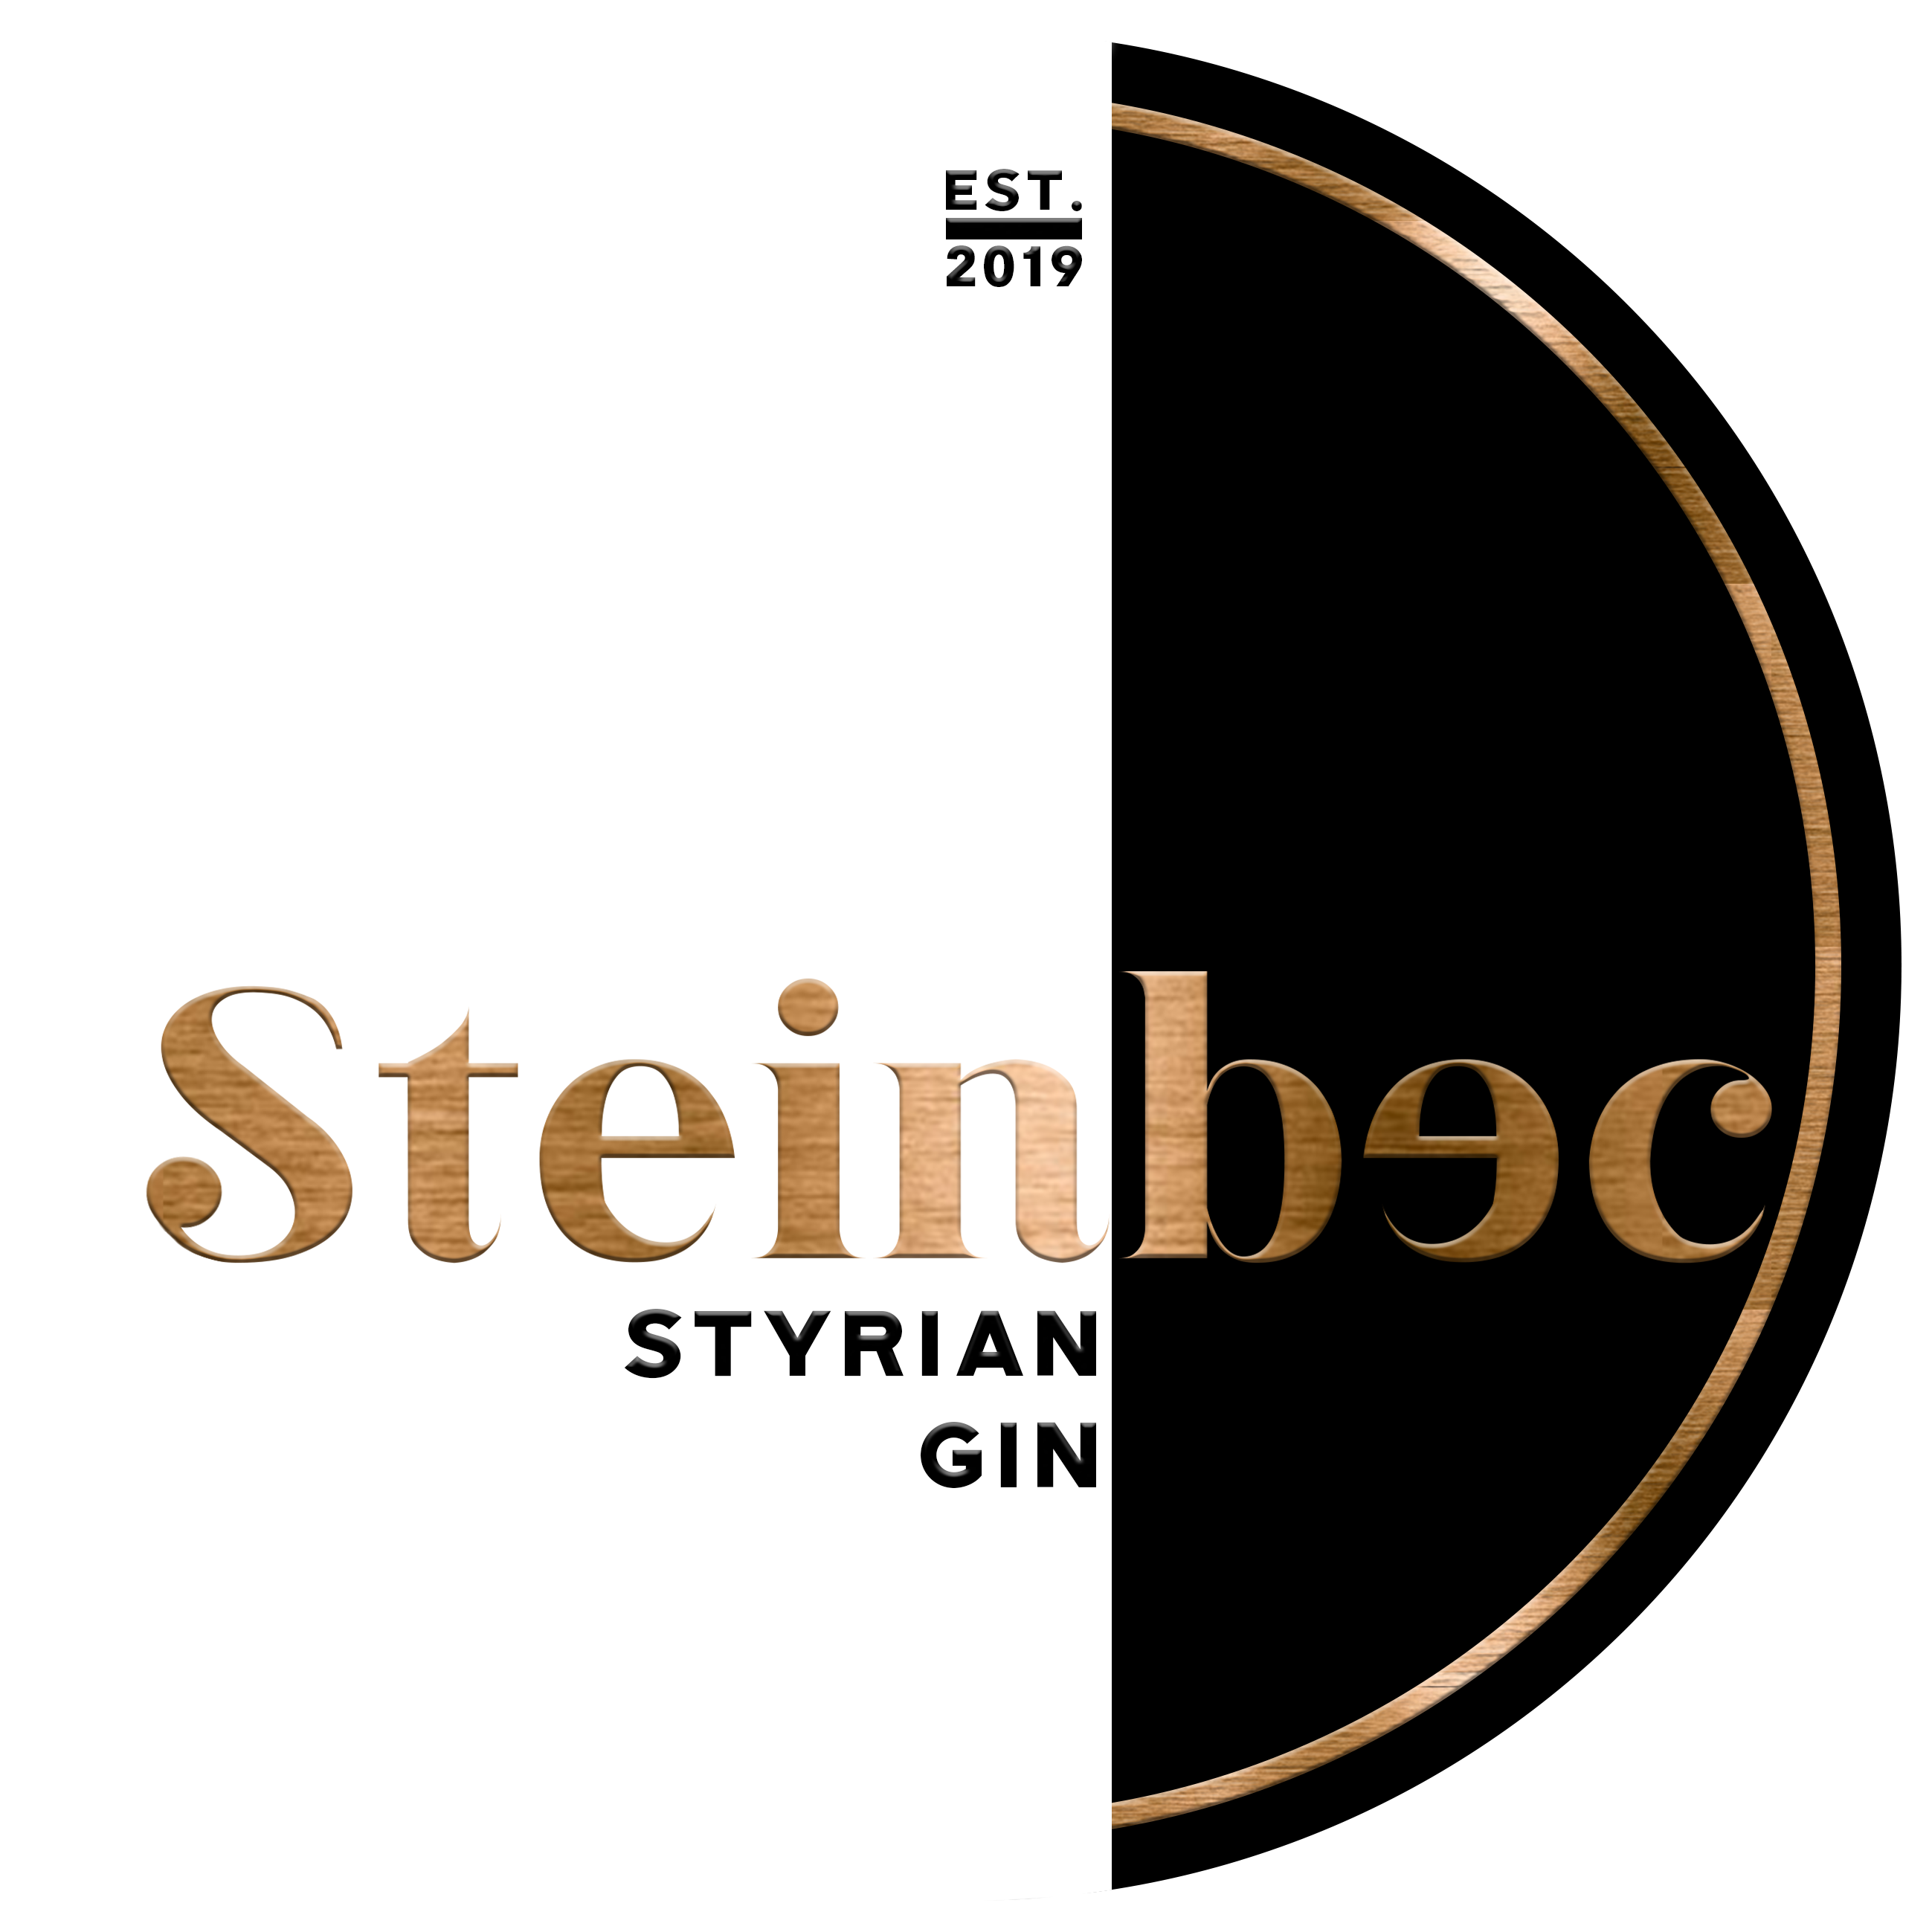 Steinbec Styrian Gin